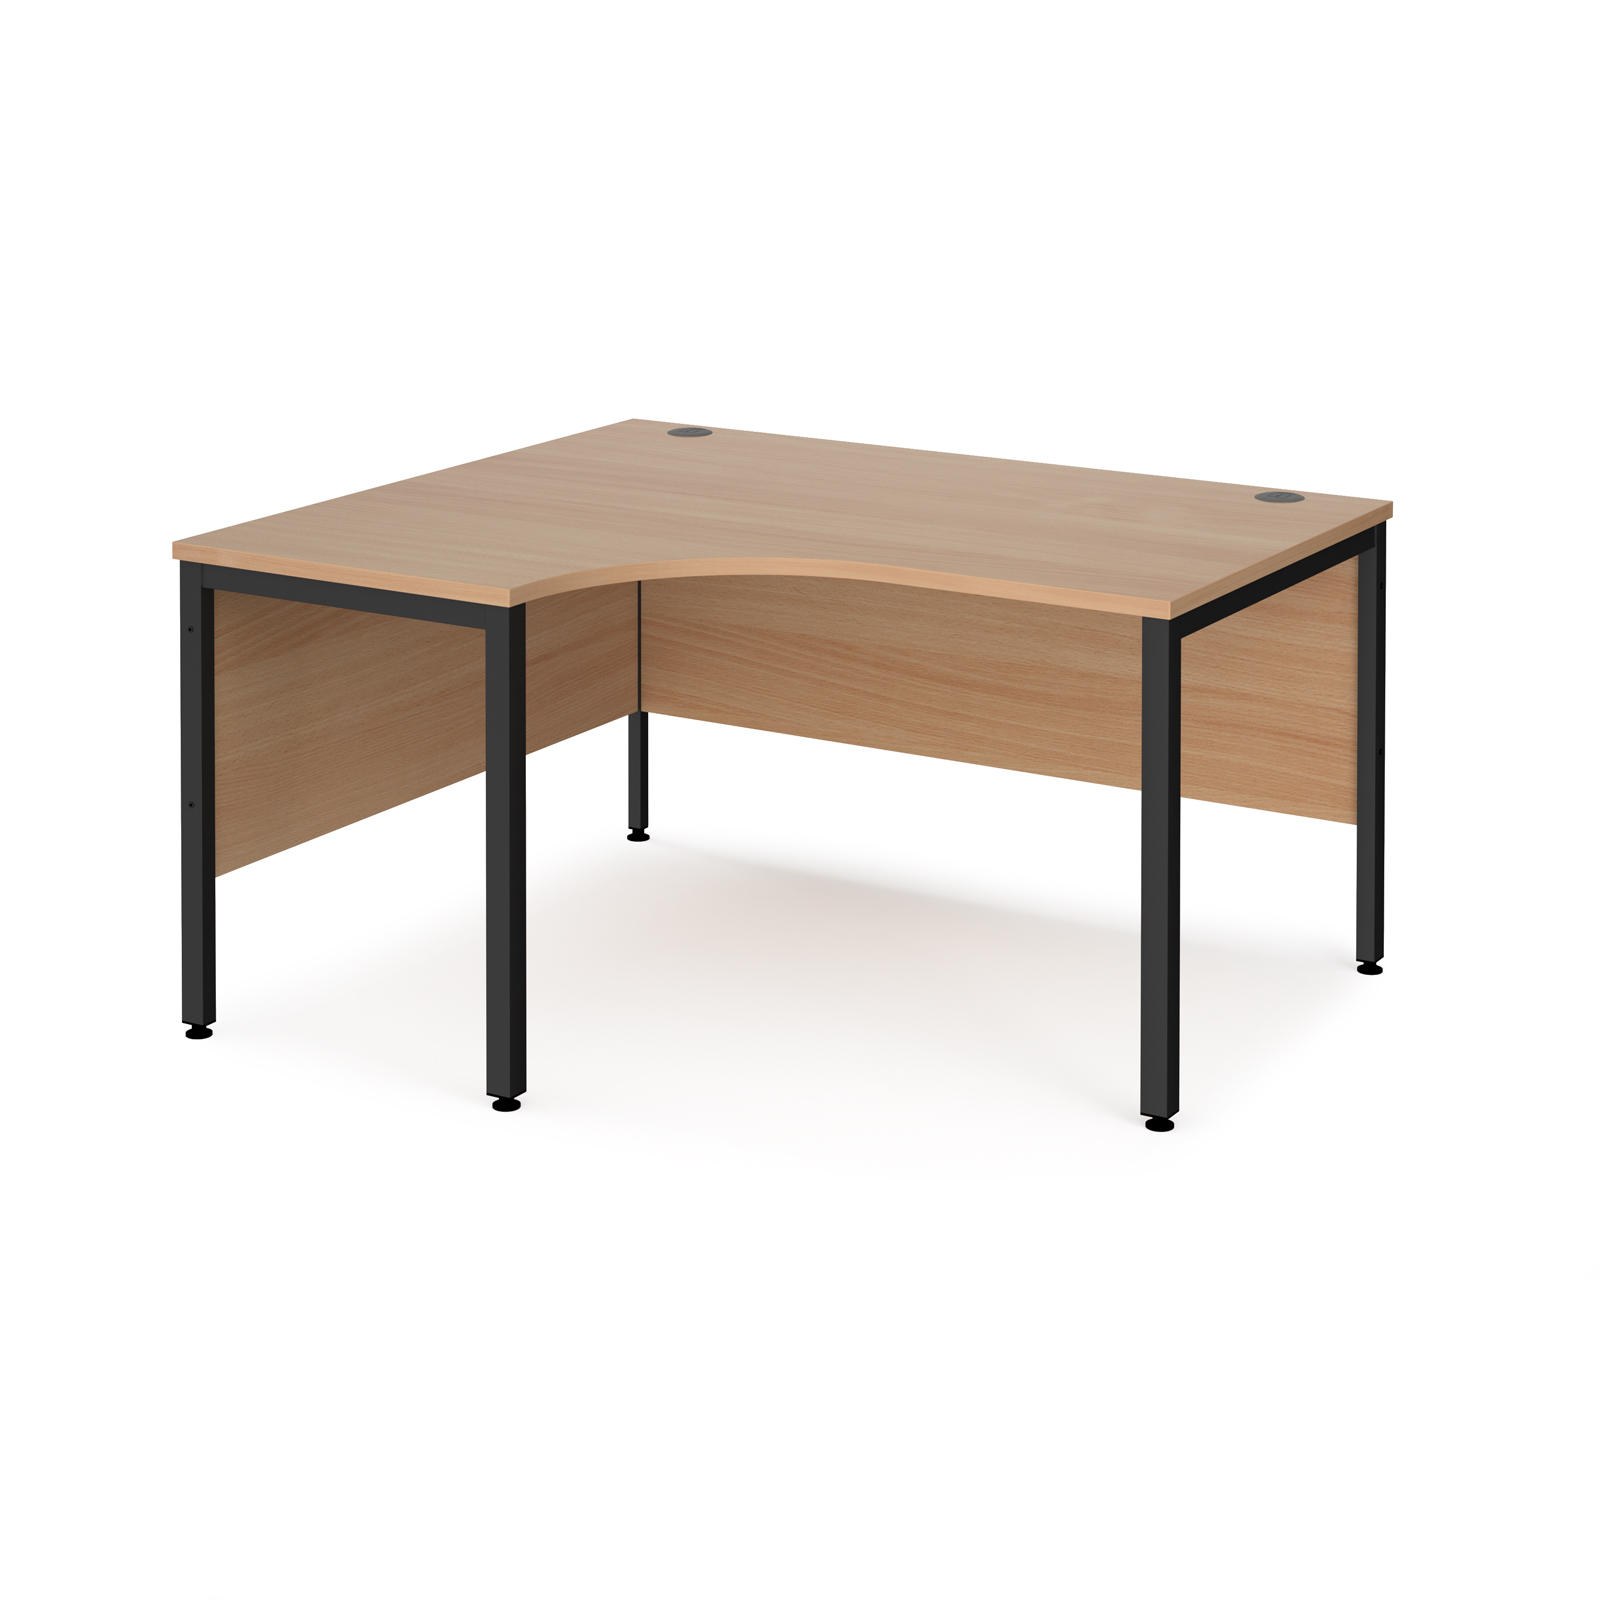 Maestro 25 left hand ergonomic desk 1400mm wide - black bench leg frame, beech top